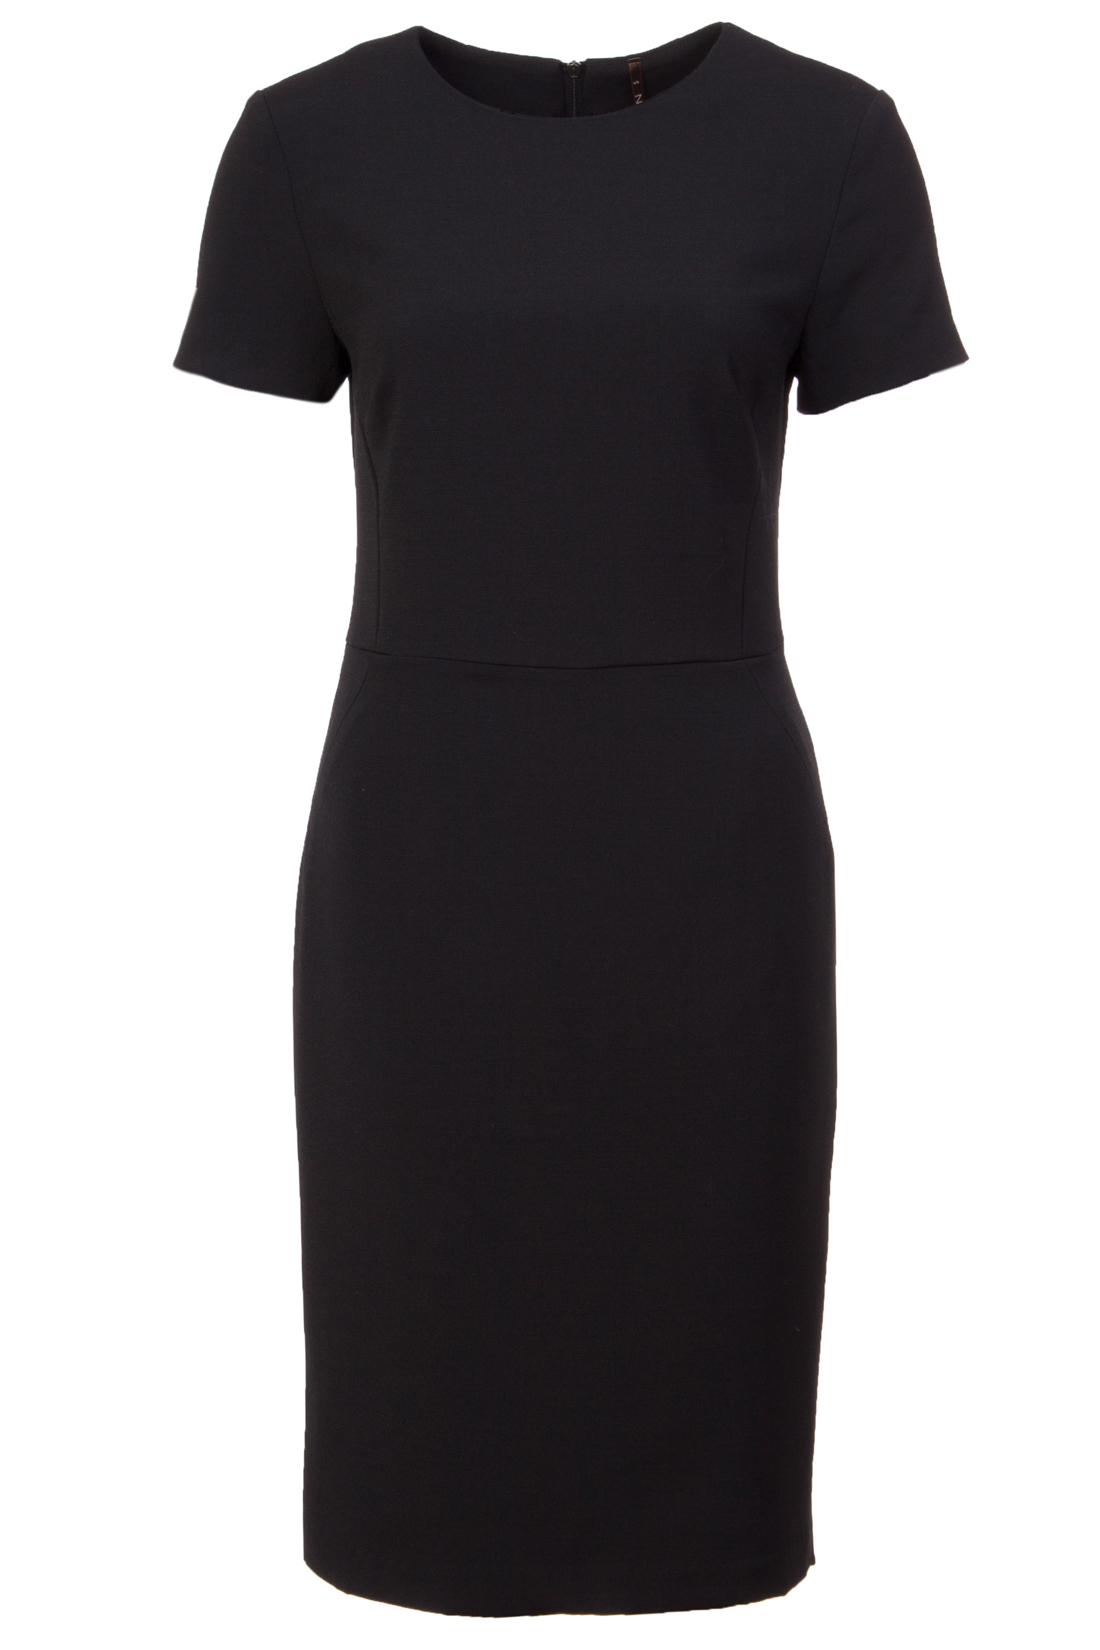 Приталенное чёрное платье (арт. baon B457072), размер L, цвет черный Приталенное чёрное платье (арт. baon B457072) - фото 4